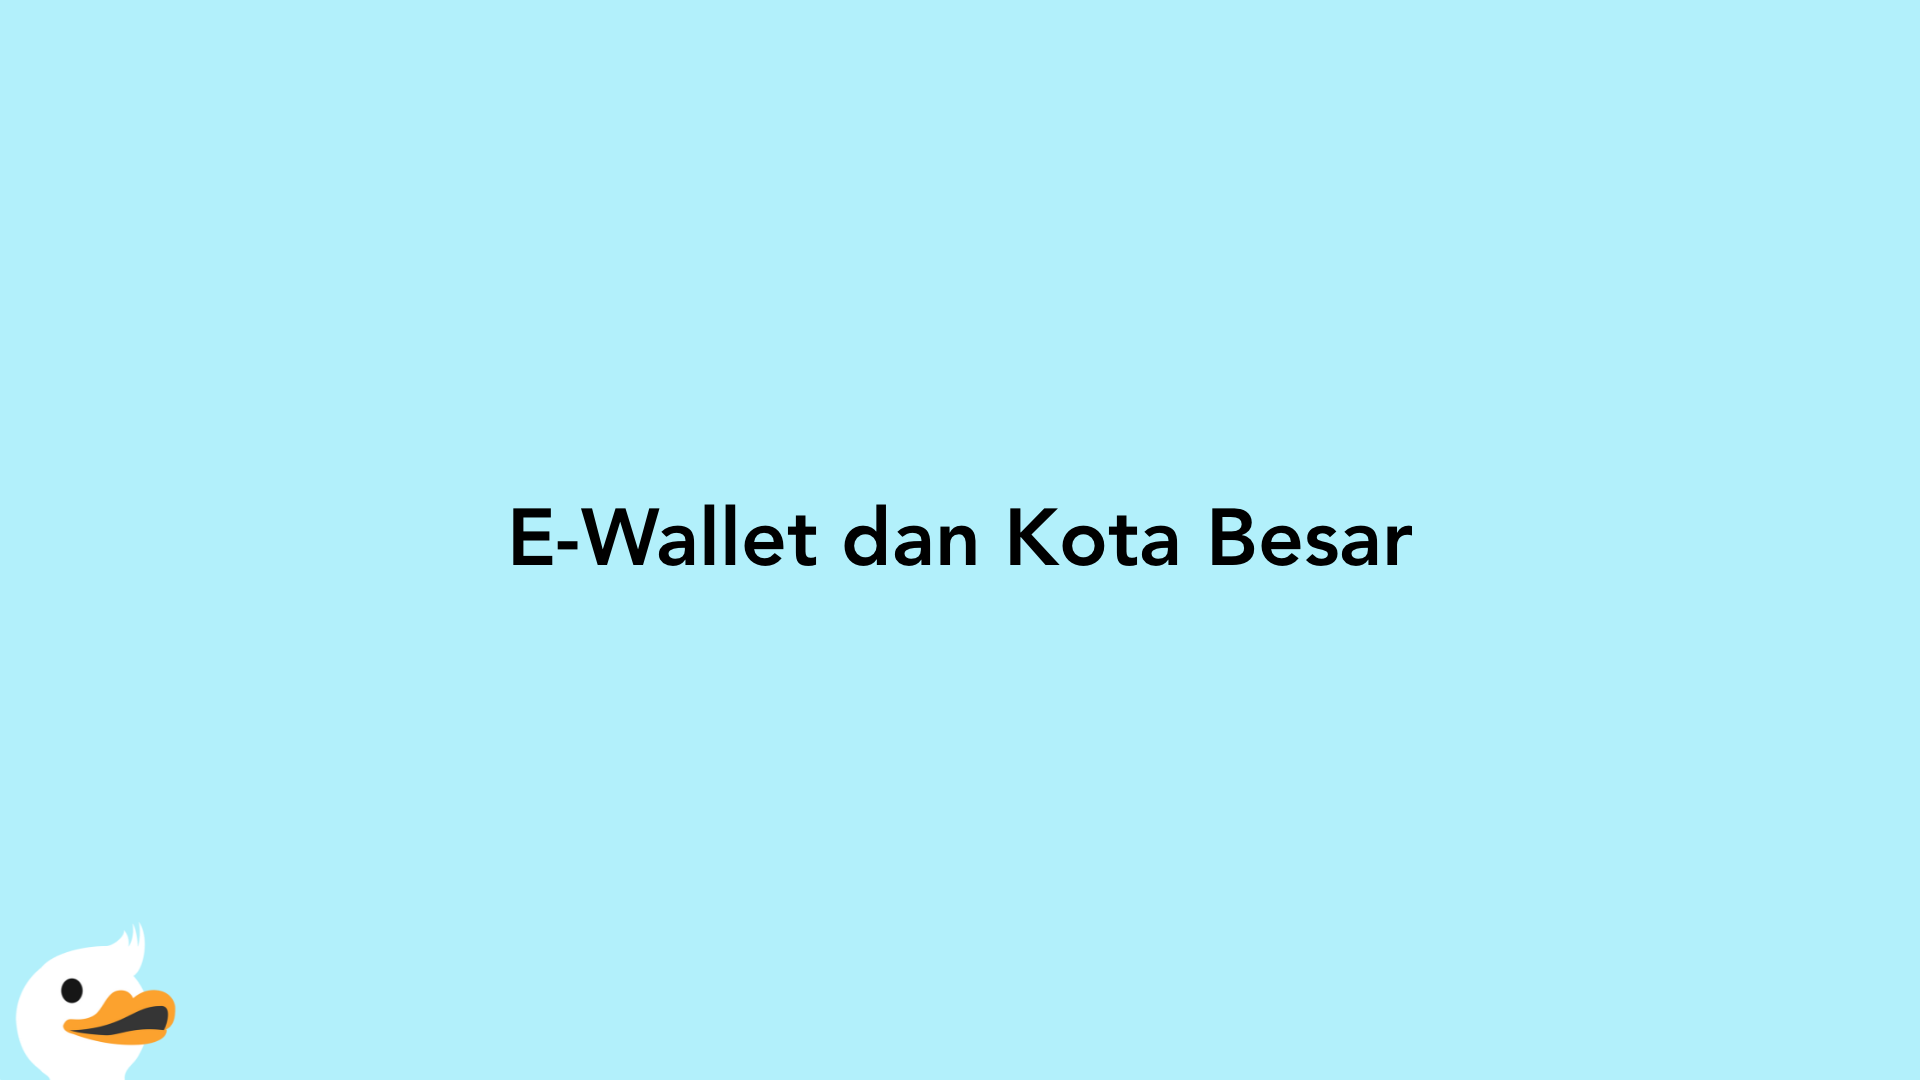 E-Wallet dan Kota Besar